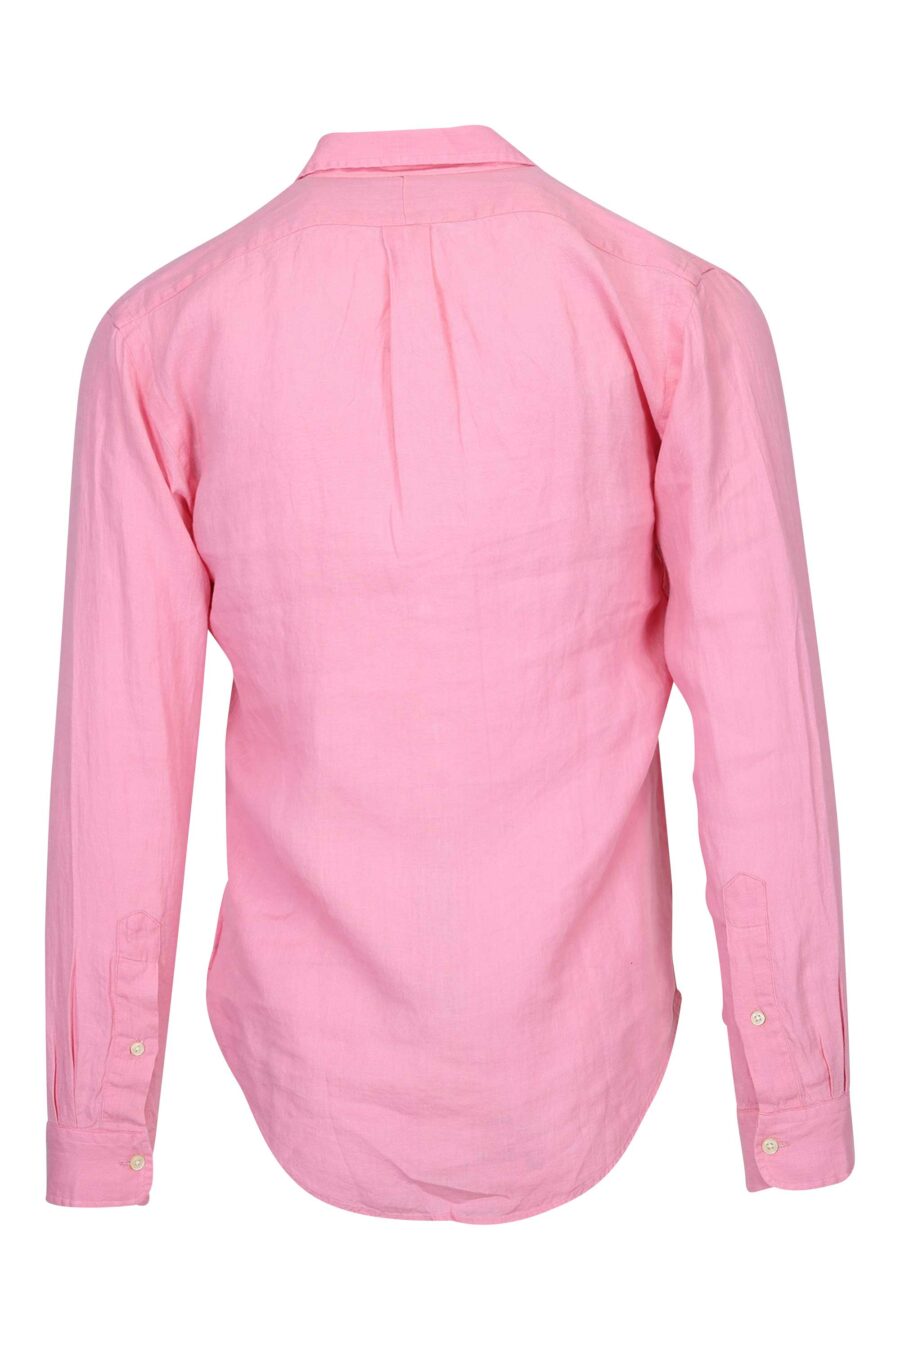 Camisa rosa con minilogo "polo" - 3616535874473 1